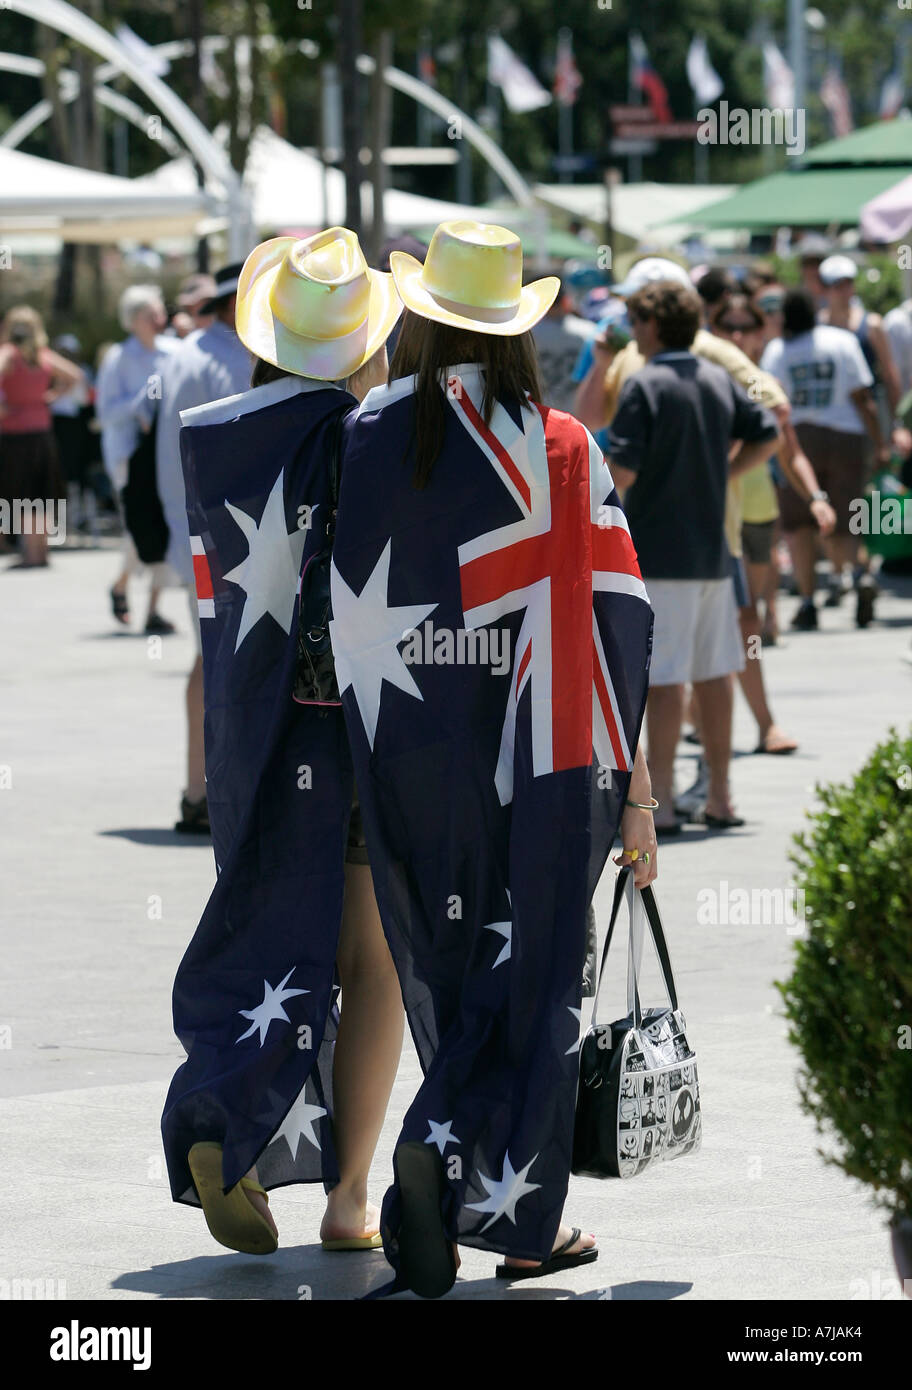 Zwei jungen Tennisfans gekleidet mit der australischen Flagge Melbourne Park entlang. Stockfoto